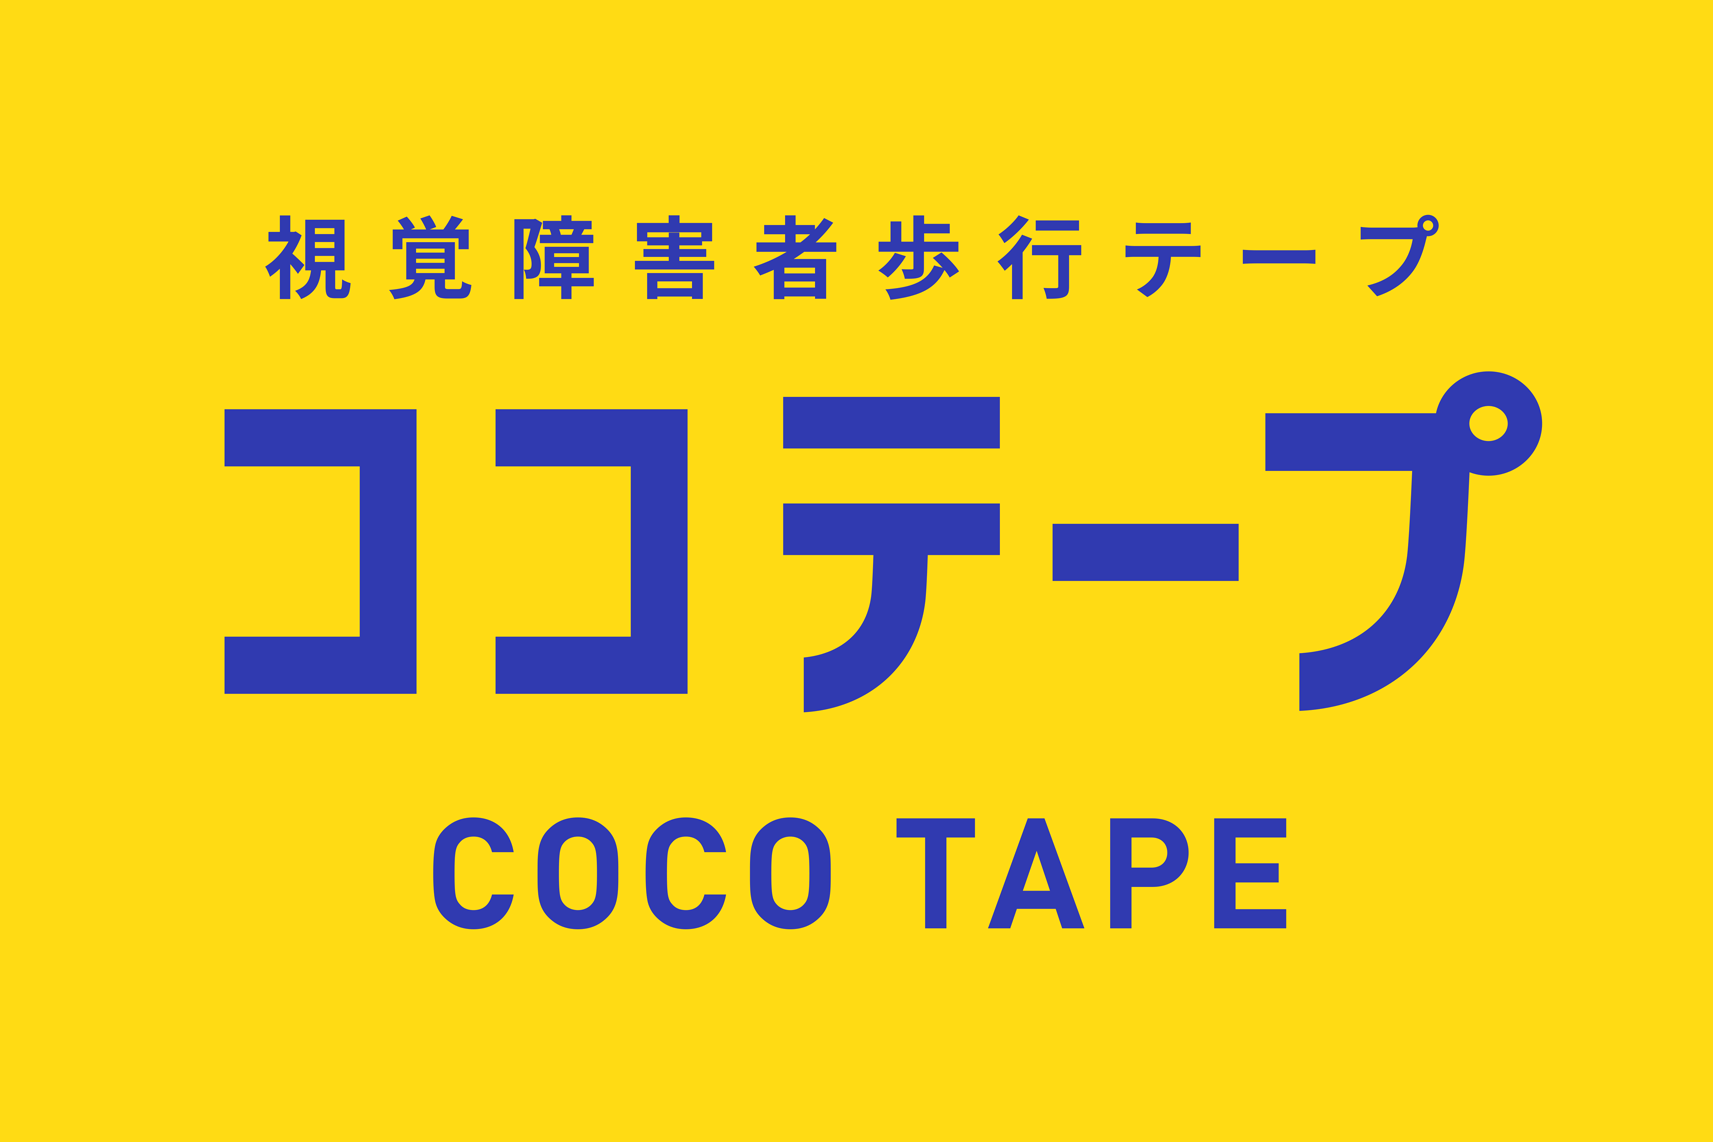 ココテープ・ロゴ画像。黄色の背景に青色のテキストで「視覚障害者歩行テープ　ココテープ　COCO TAPE」